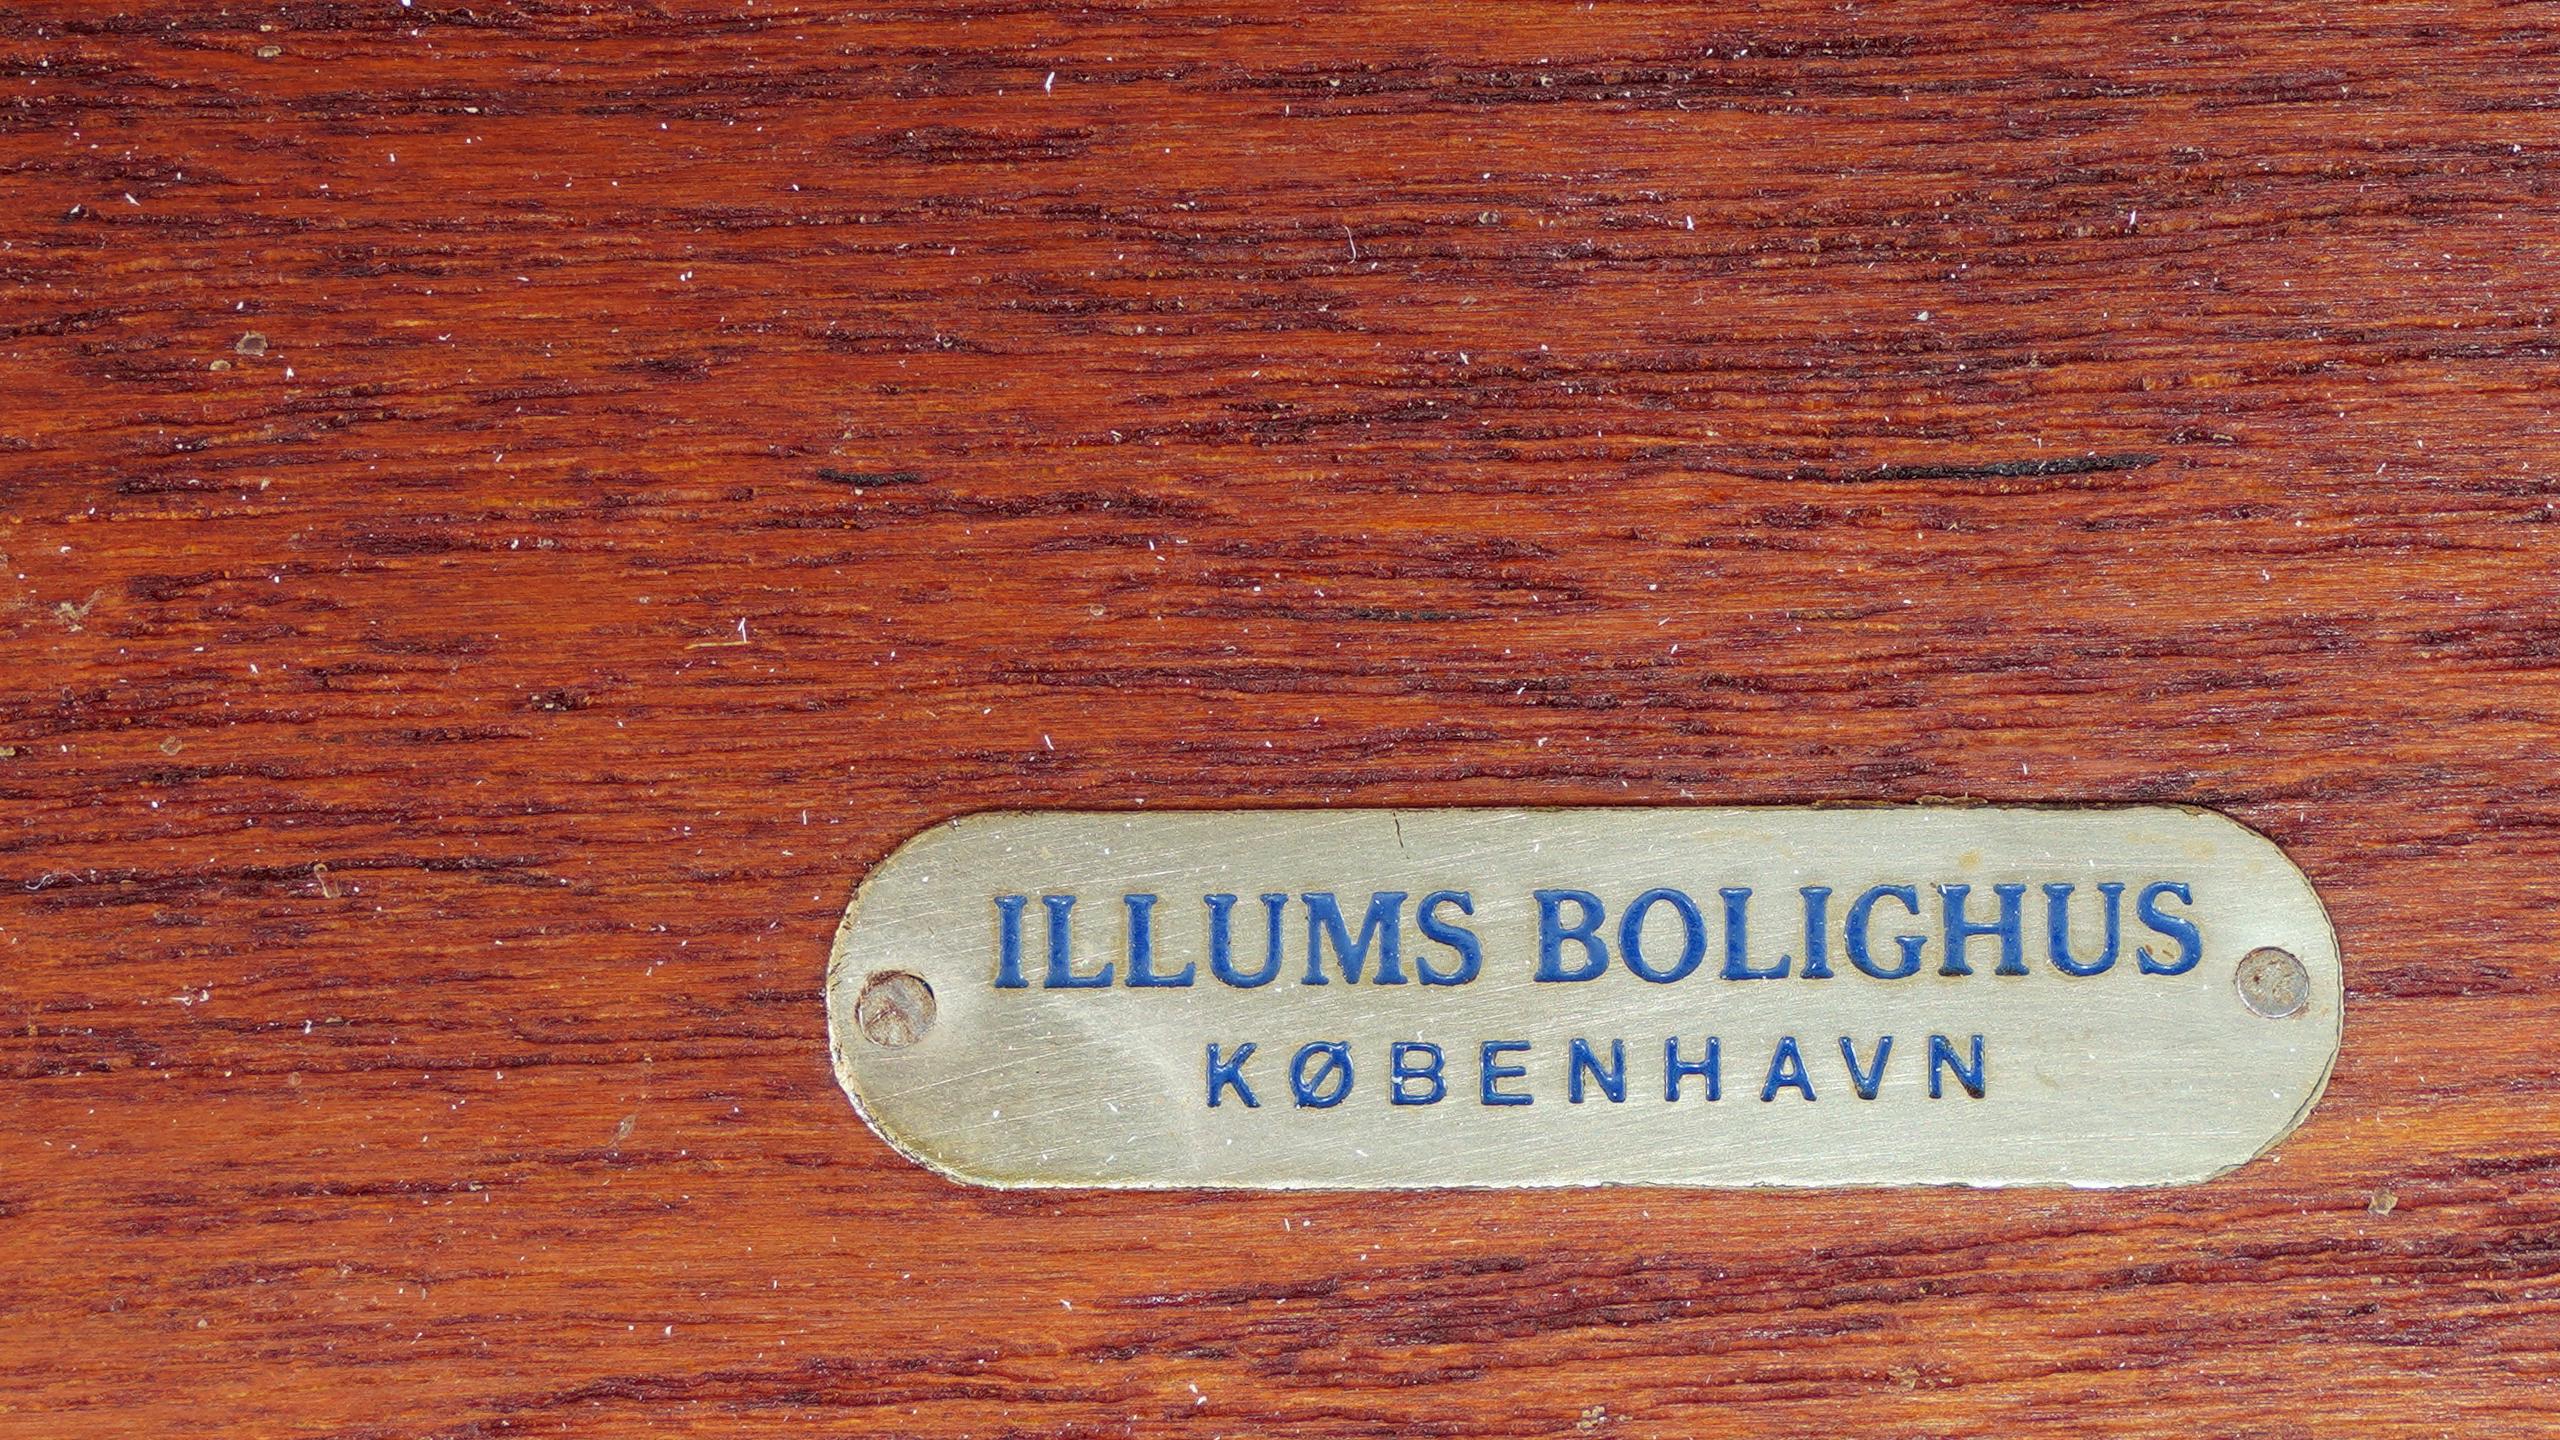 Bureau et table Finn Juhl Nyhavn, 1ère édition, 1945 par Illums Bolighus, København 13